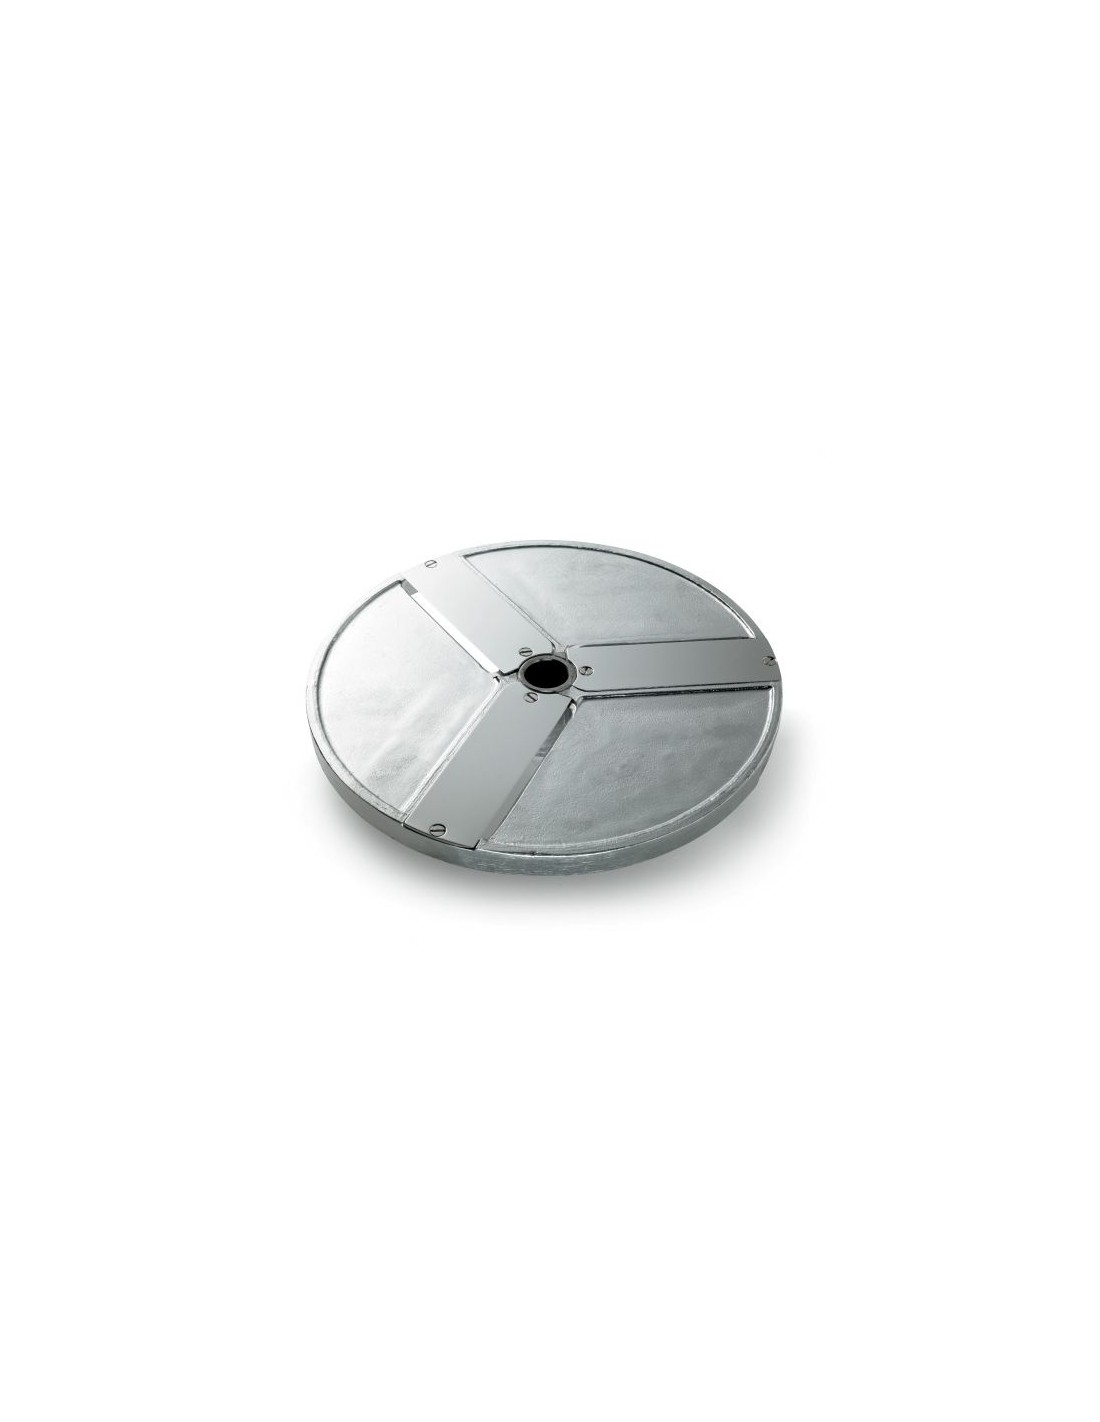 Disco para cortes - Diámetro 205 mm - Espesor de corte 60 mm